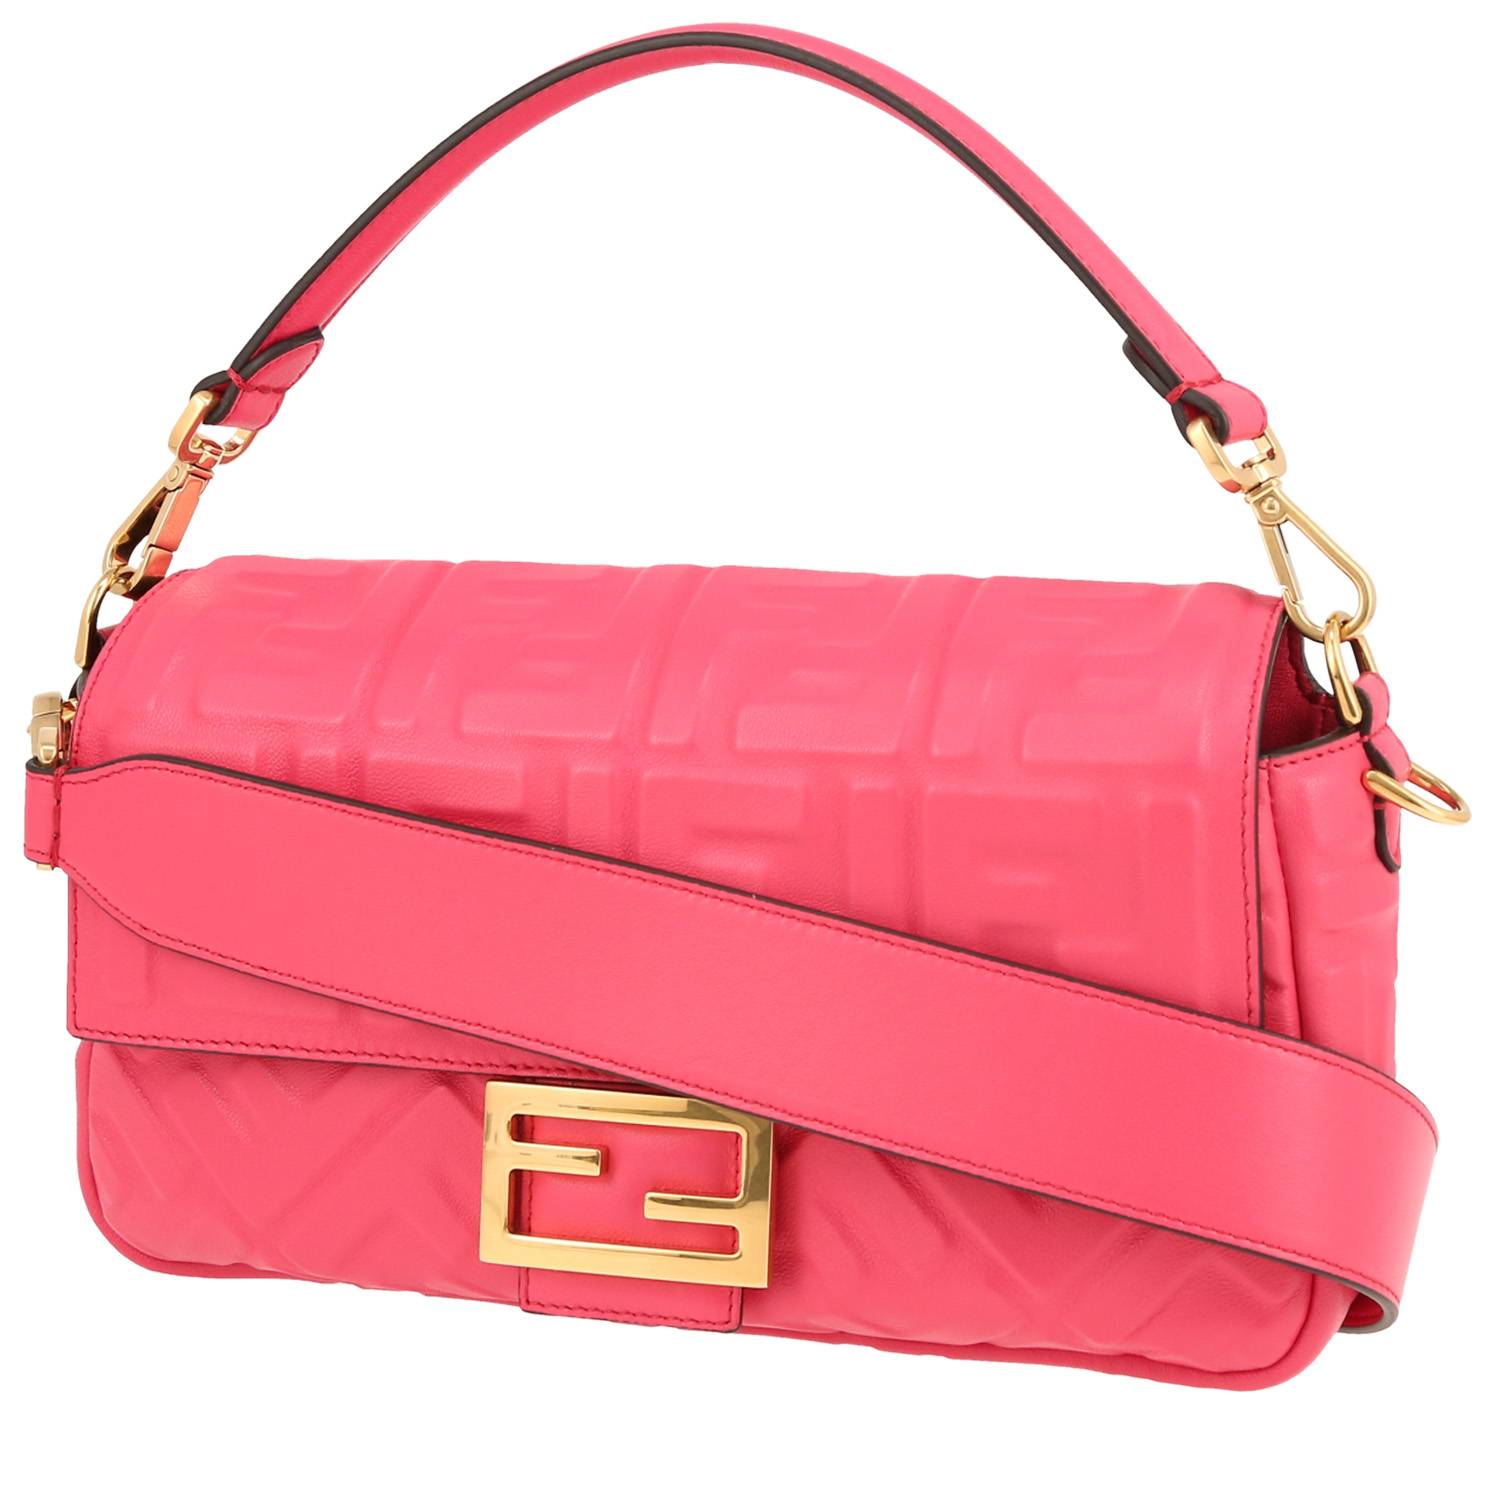 Baguette Handbag In Fushia Pink Monogram Leather